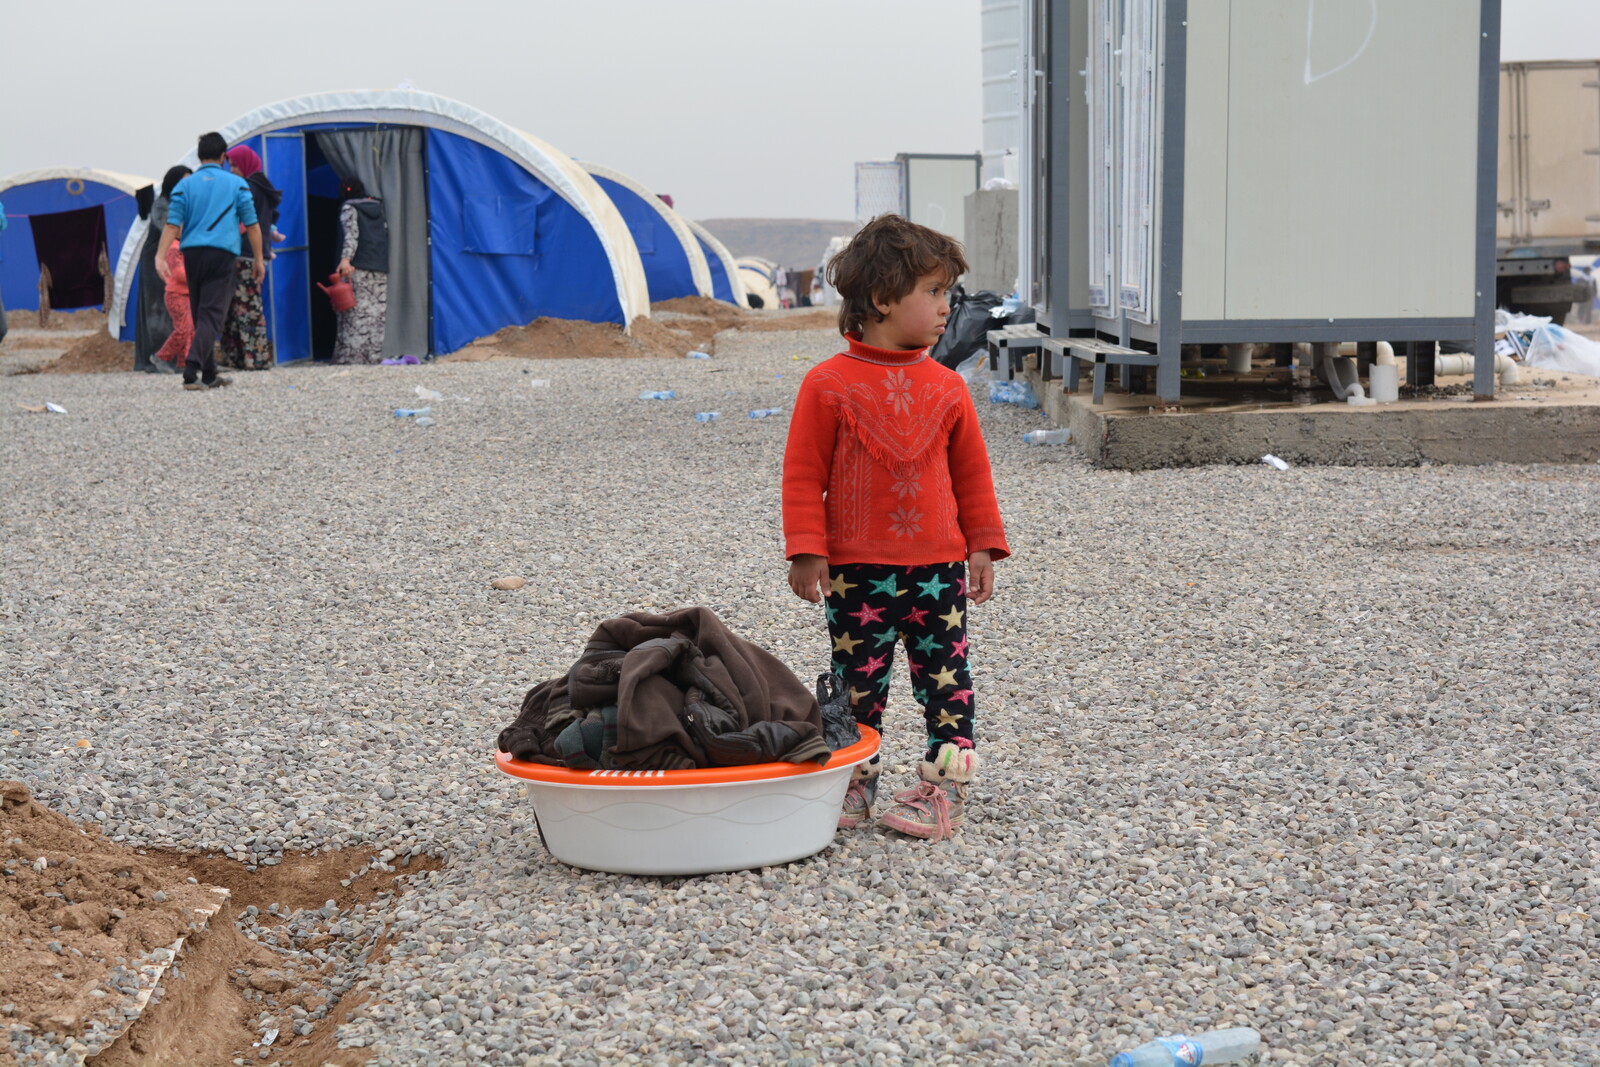 Ein Kind steht in einem Flüchtlingslager. Der Winter ist hart für die Kleinen, die häufig noch keinen Tag Frieden erlebt haben.